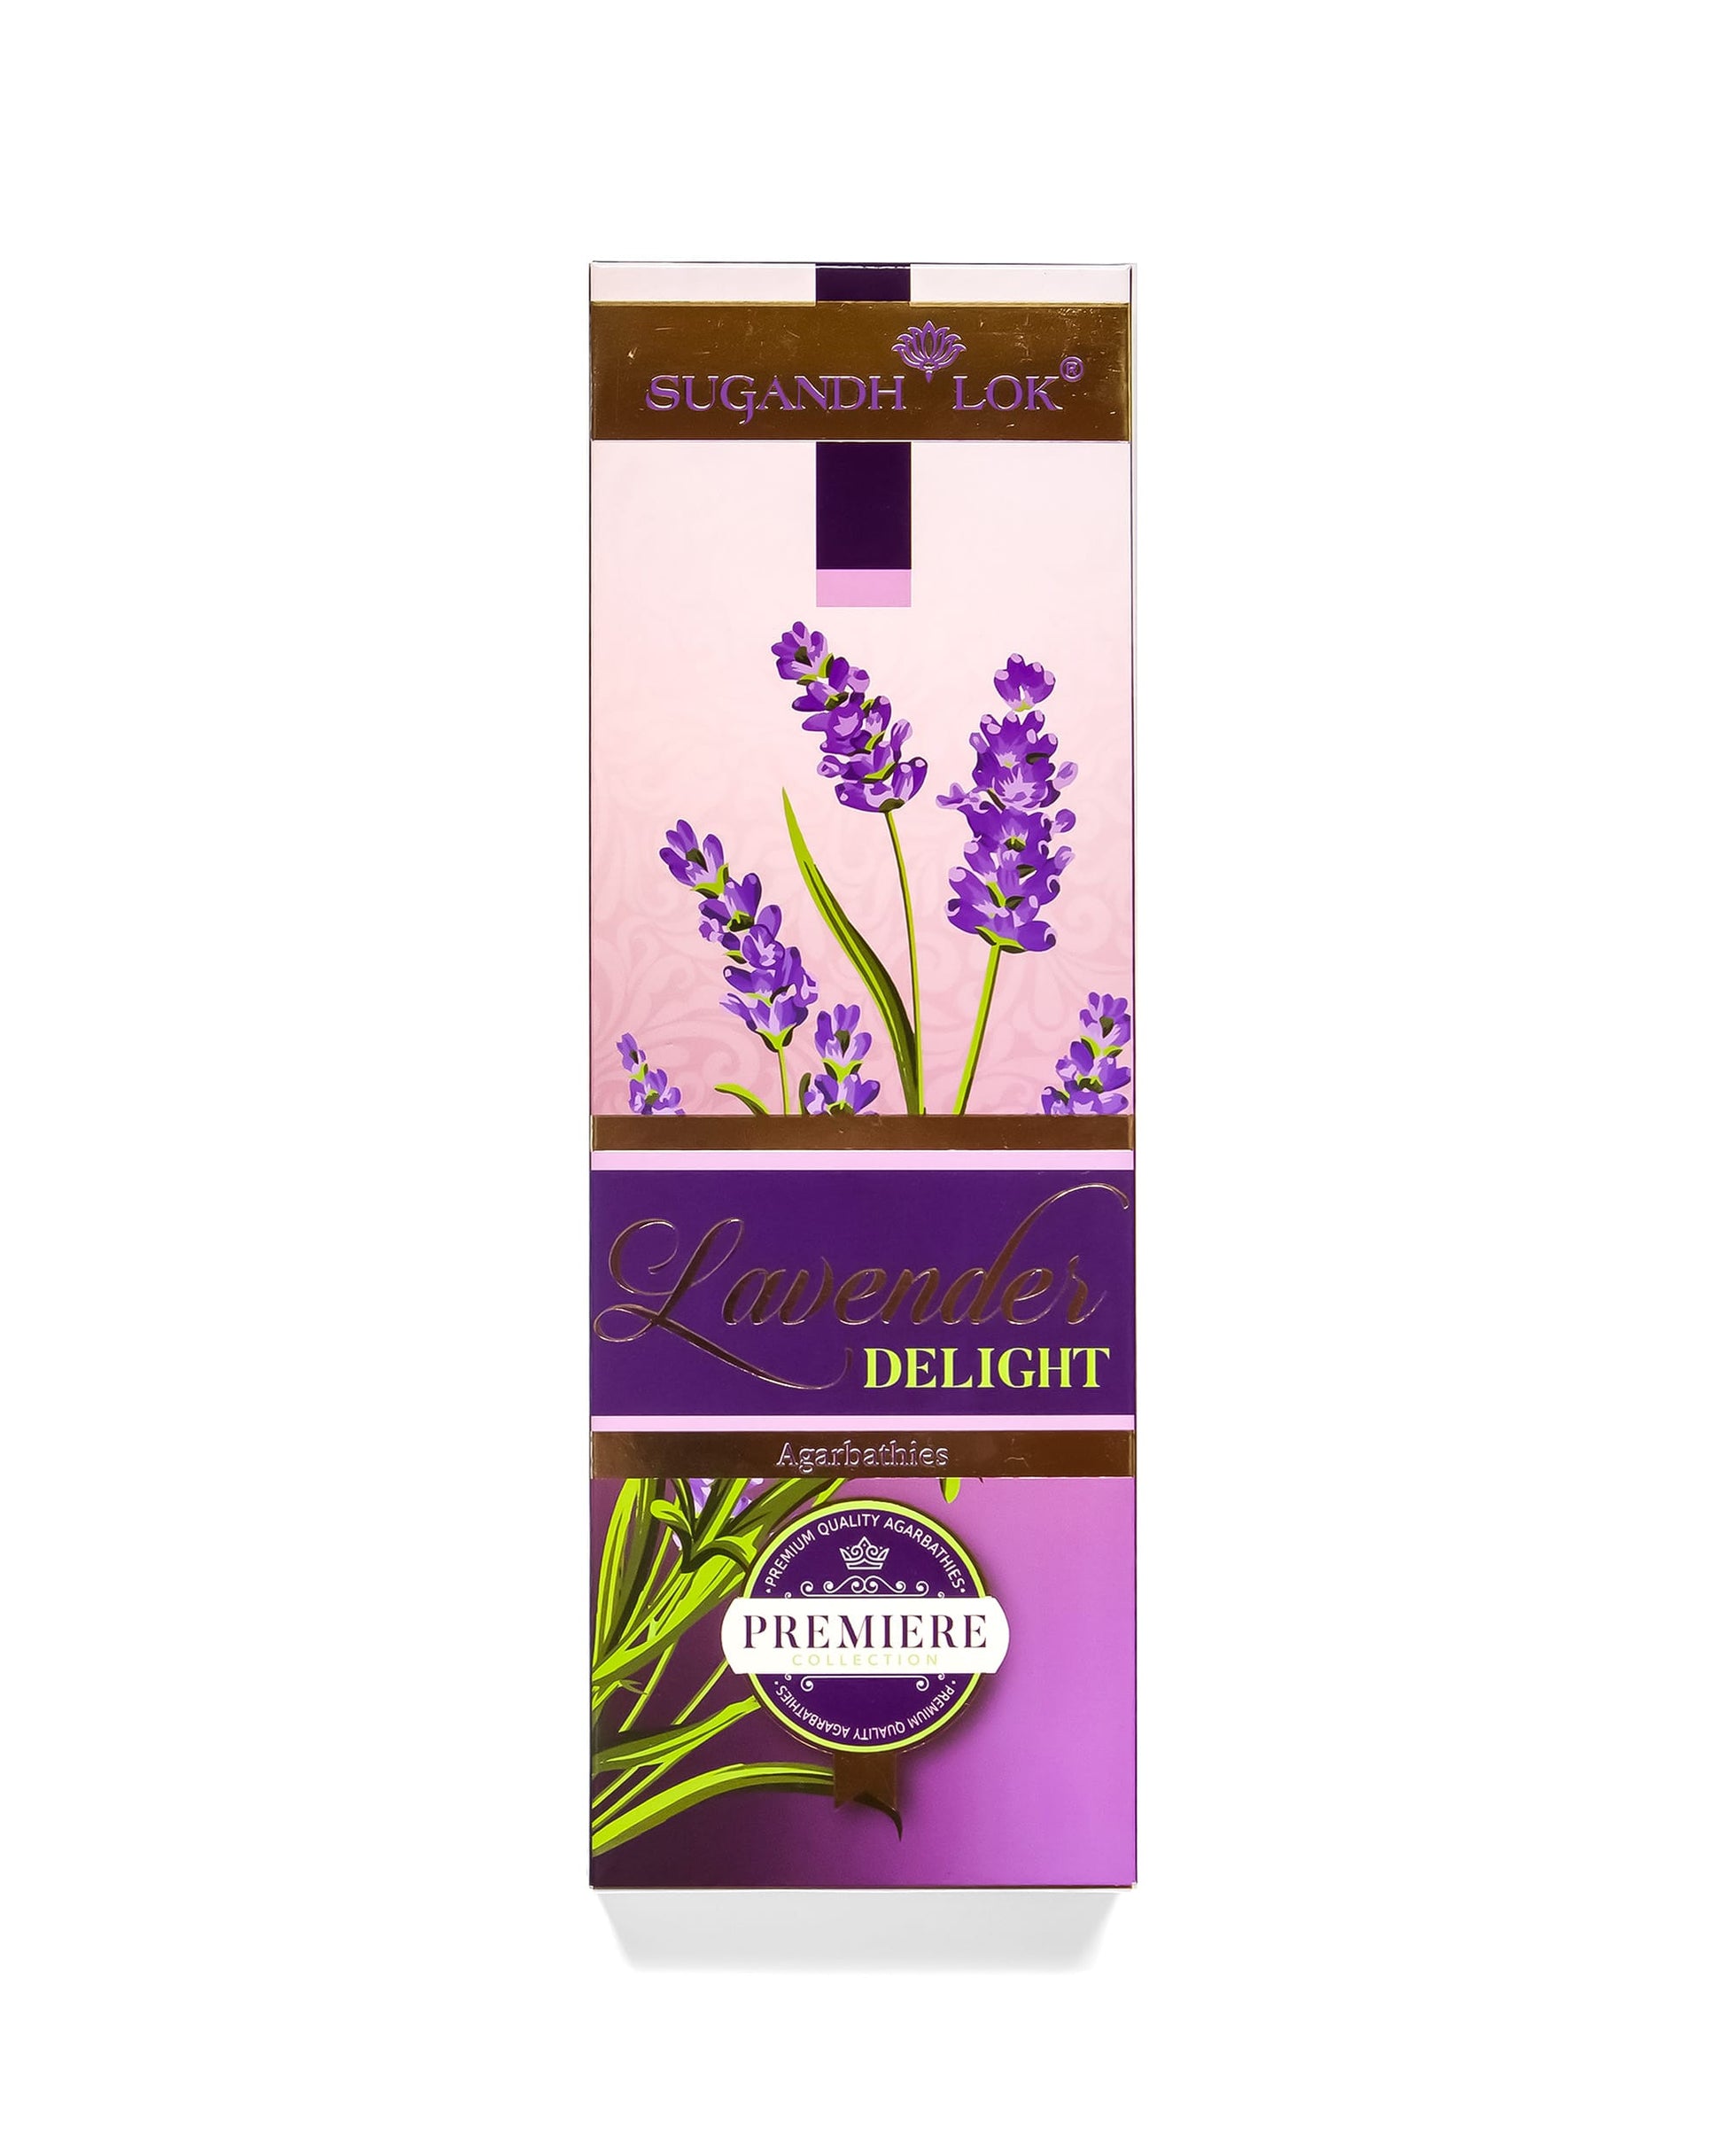 Lavender Delight Agarbatti Box by SugandhLok